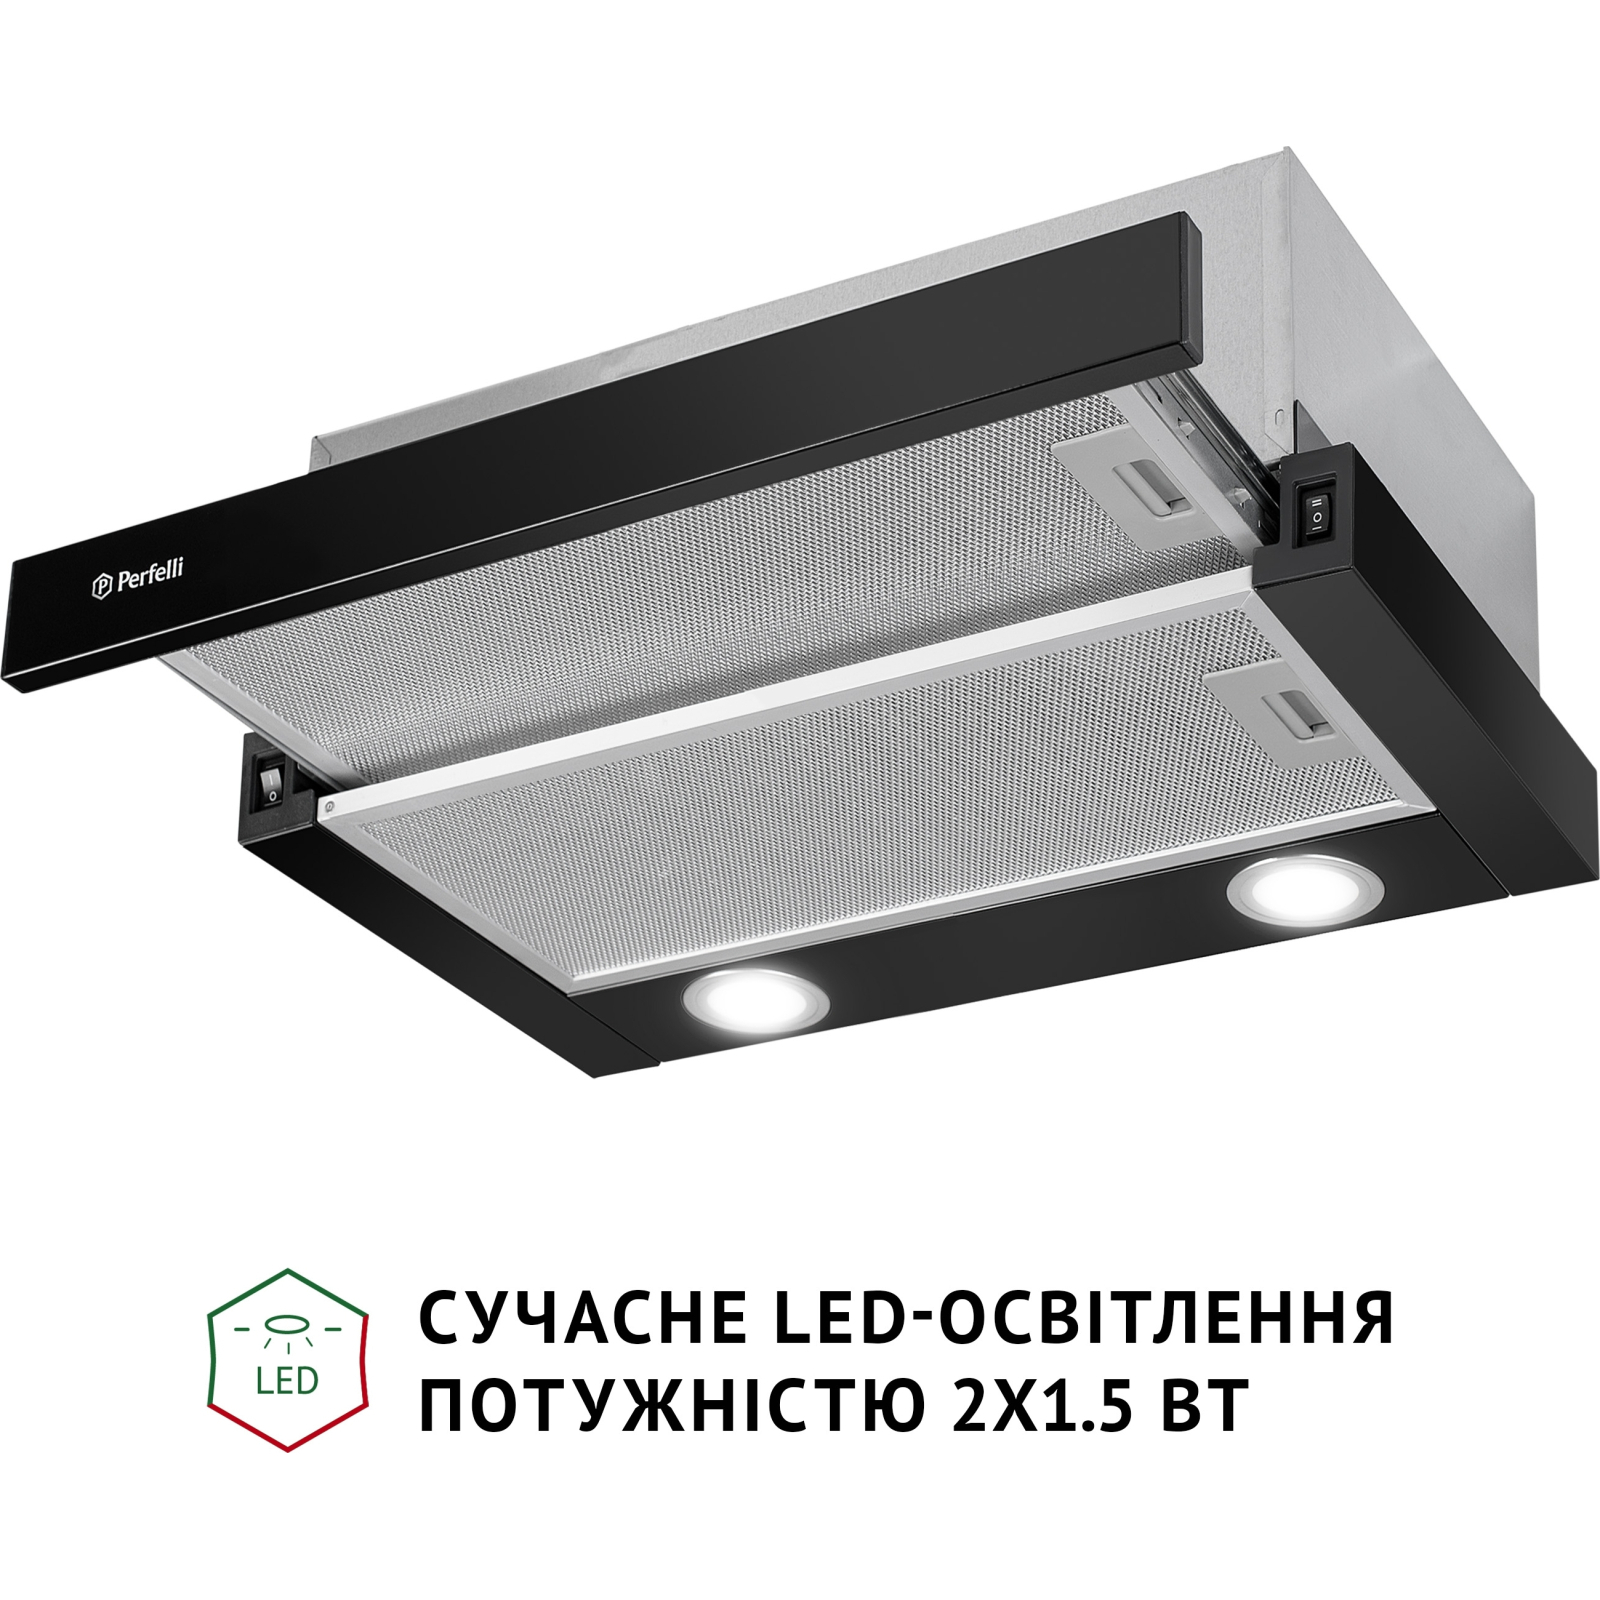 Вытяжка кухонная Perfelli TL 502 I LED изображение 4